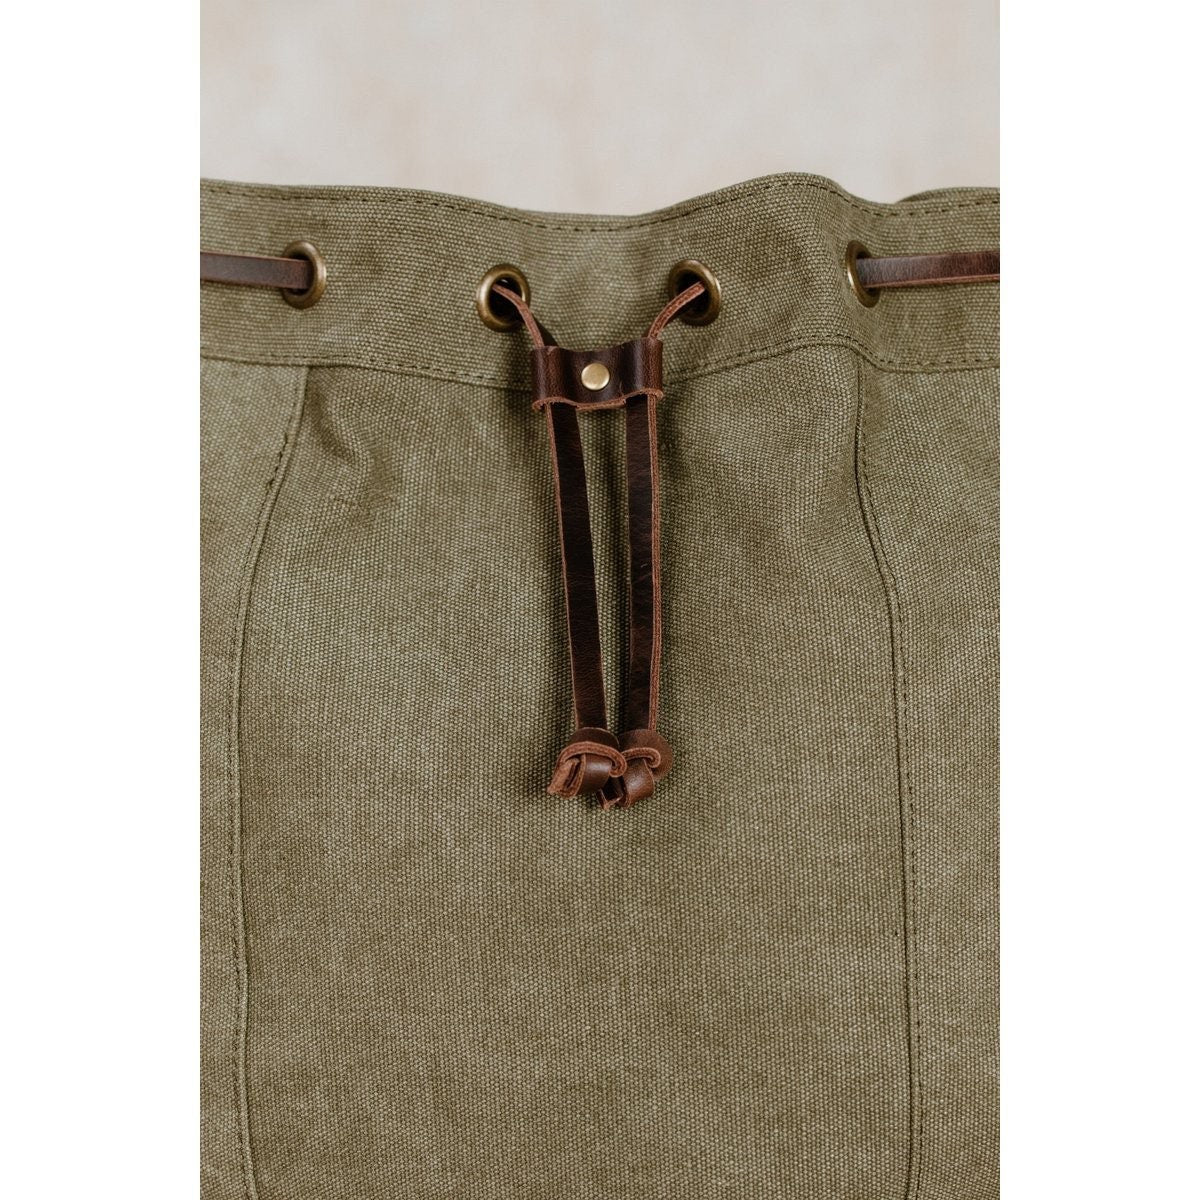 NORDLICHT Beuteltasche JANNA Tasche aus Segeltuch 2 in 1 Rucksack und Umhängetasche grün